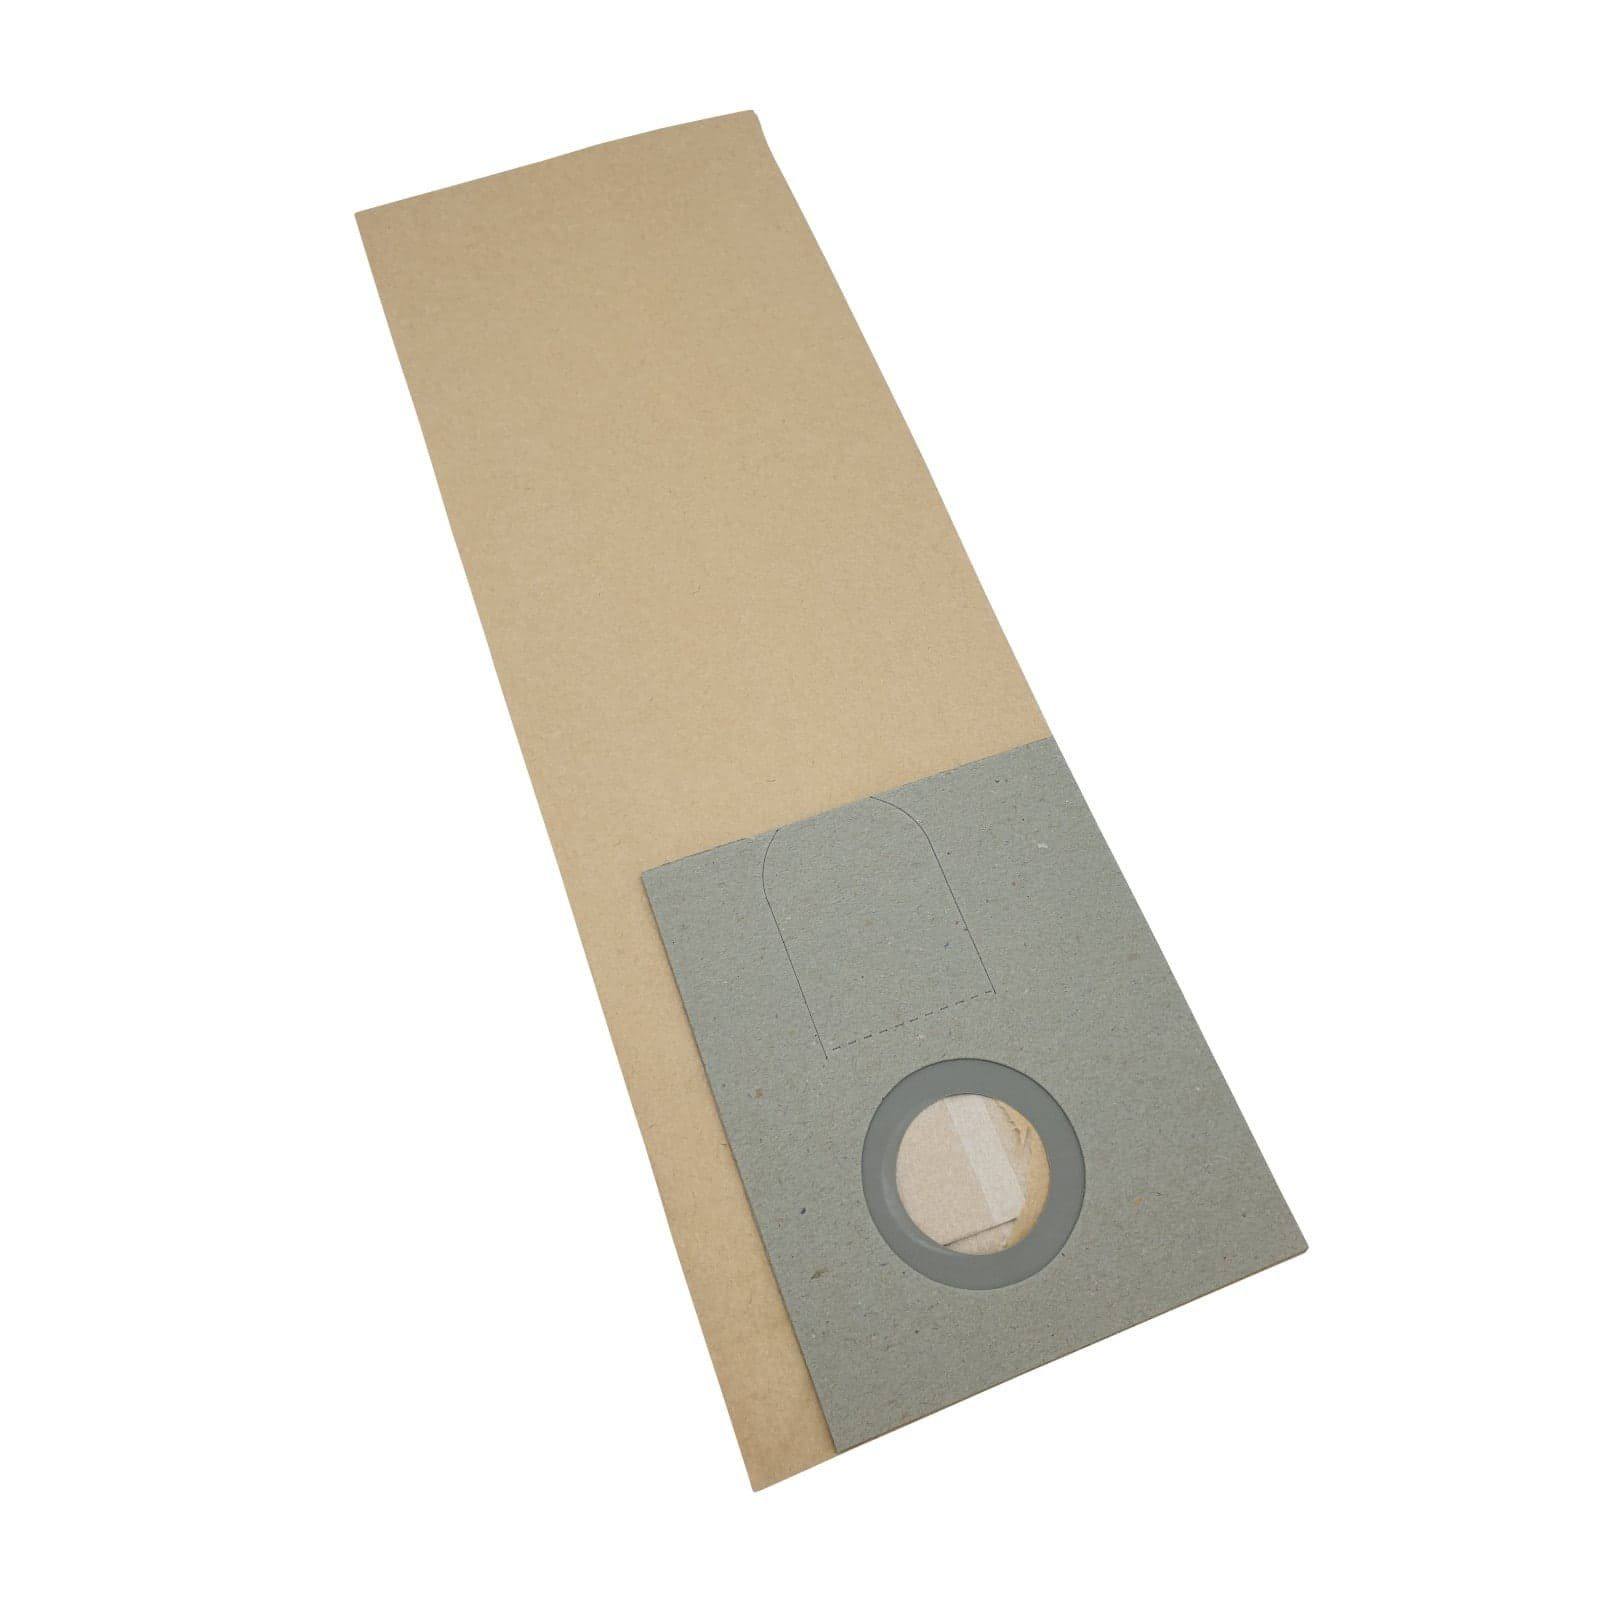 Reinica Staubsaugerbeutel passend für Floormatic Floordress QFM 35, 10er-Pack Staubbeutel Saugerbeutel Beutel Filtertüten | Staubsaugerbeutel